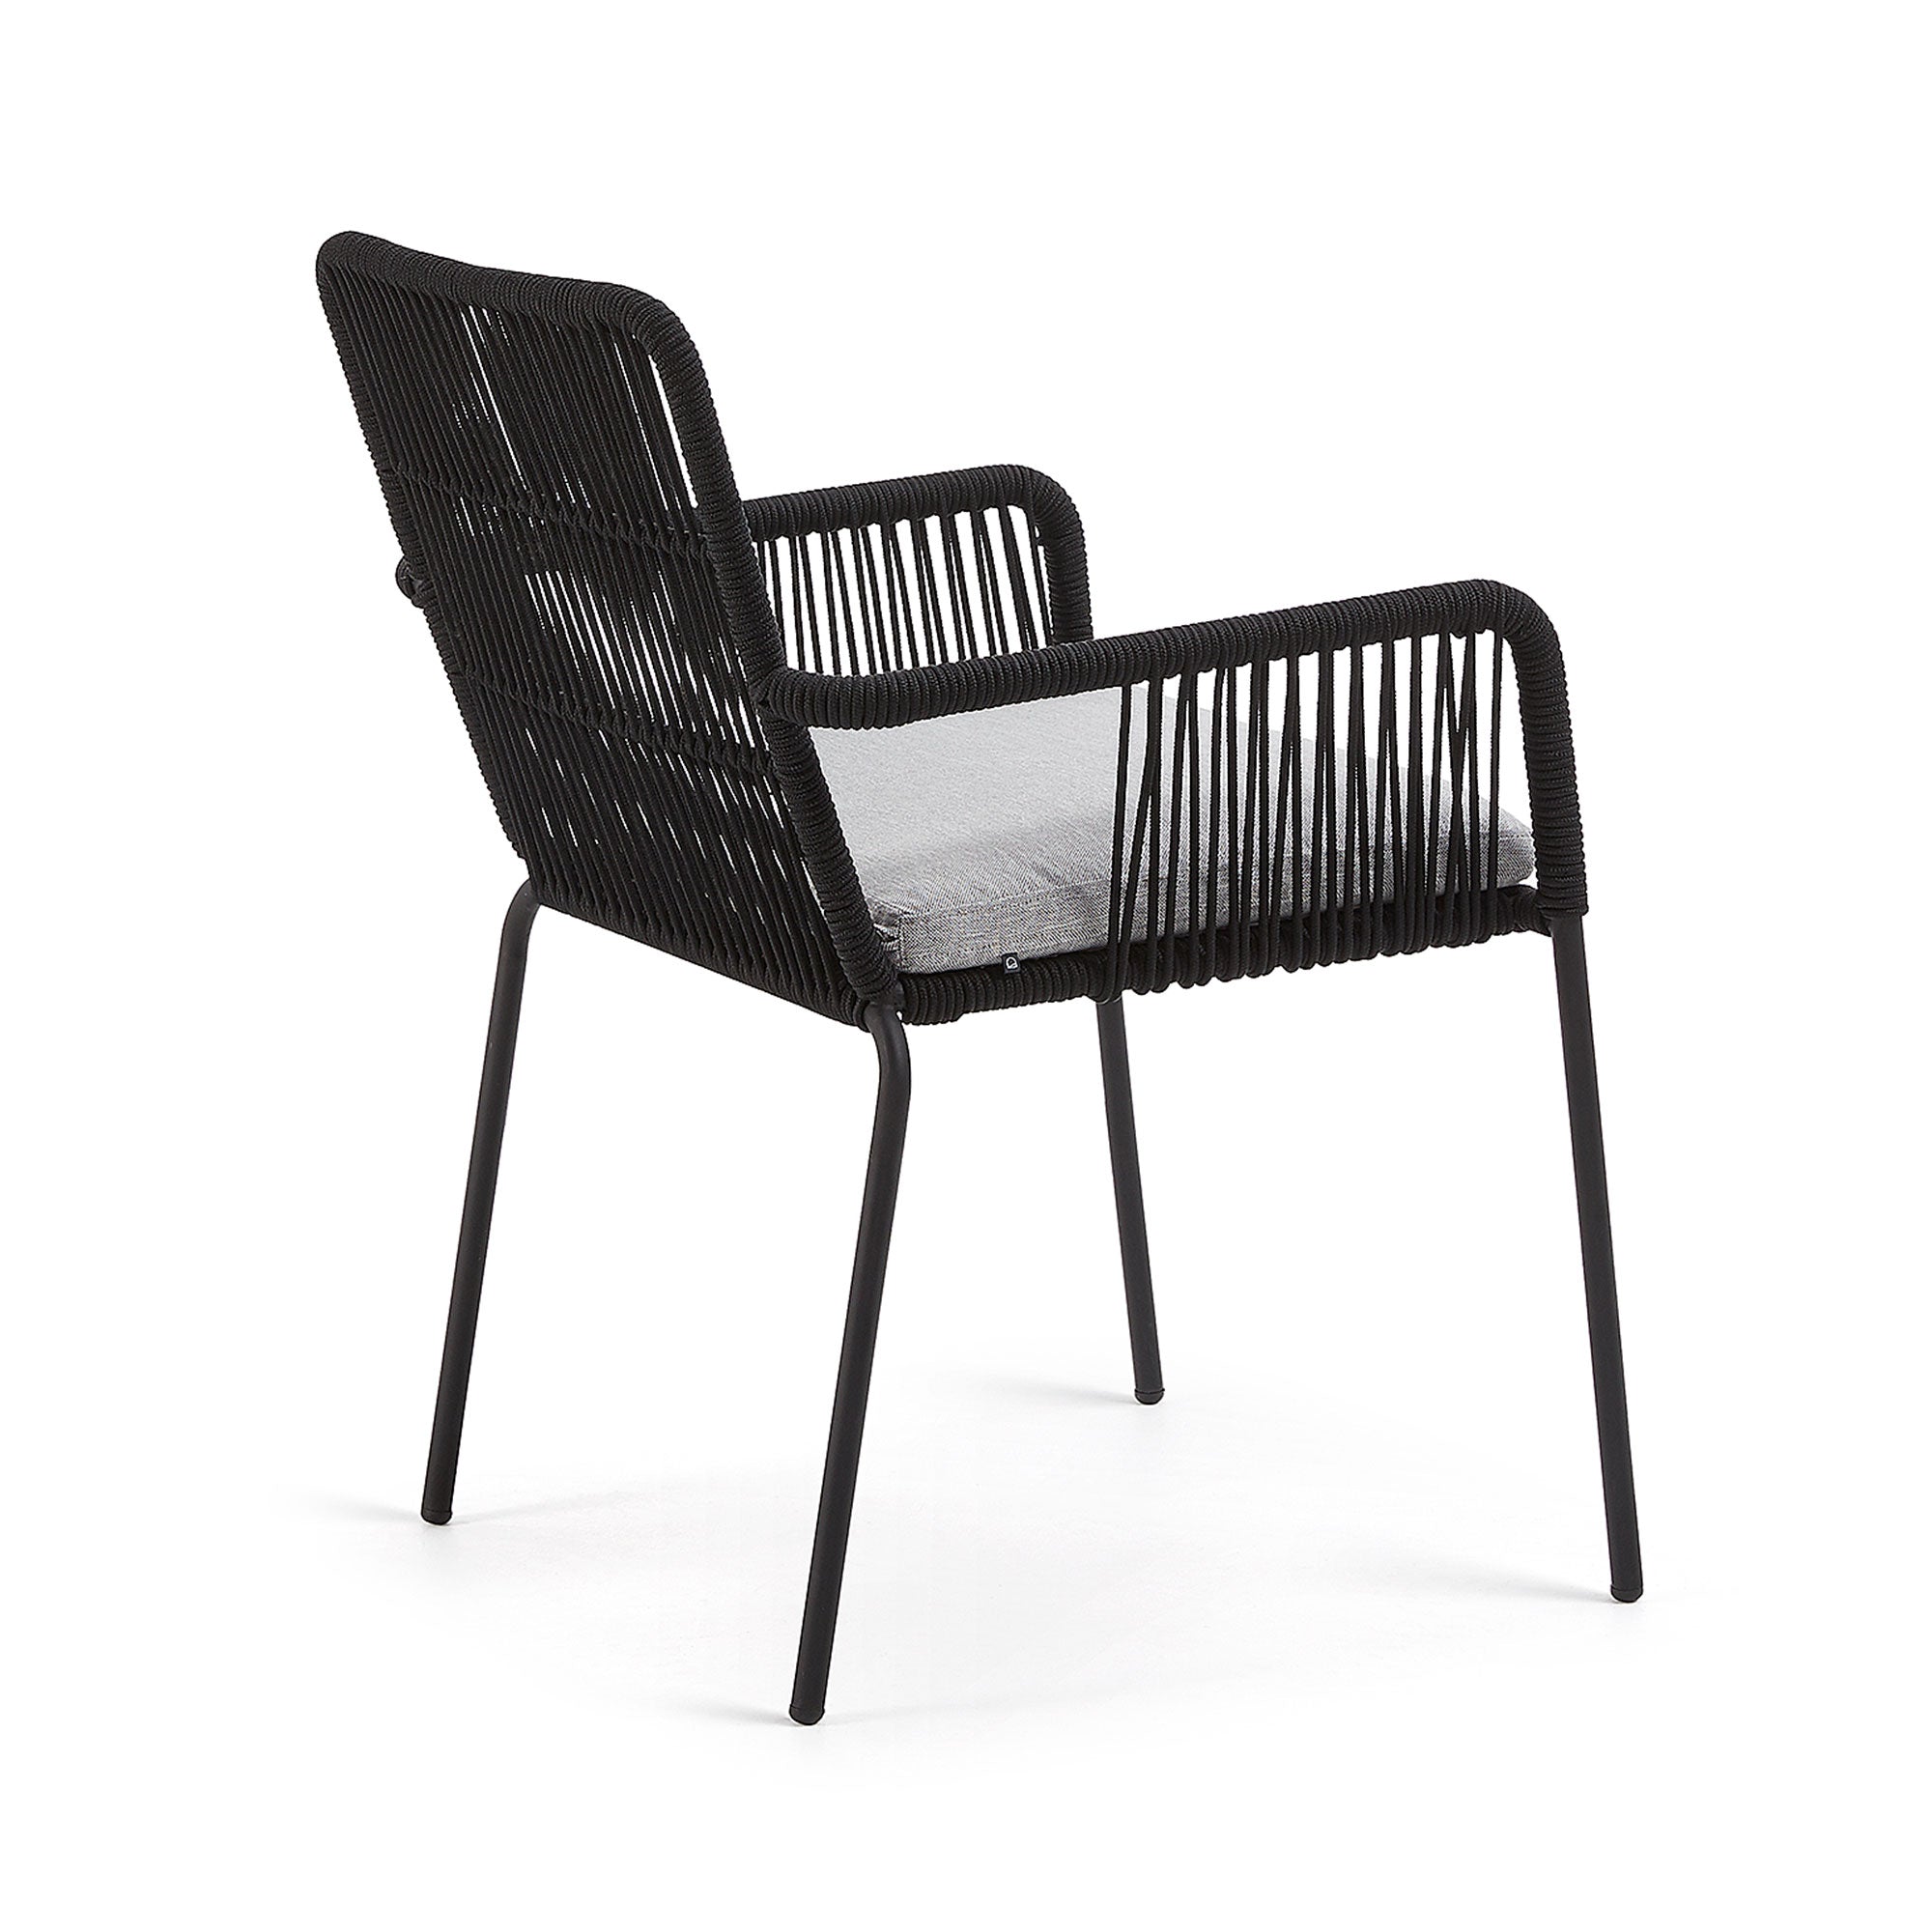 Samanta egymásba rakható szék fekete zsinórból és horganyzott acéllábakból